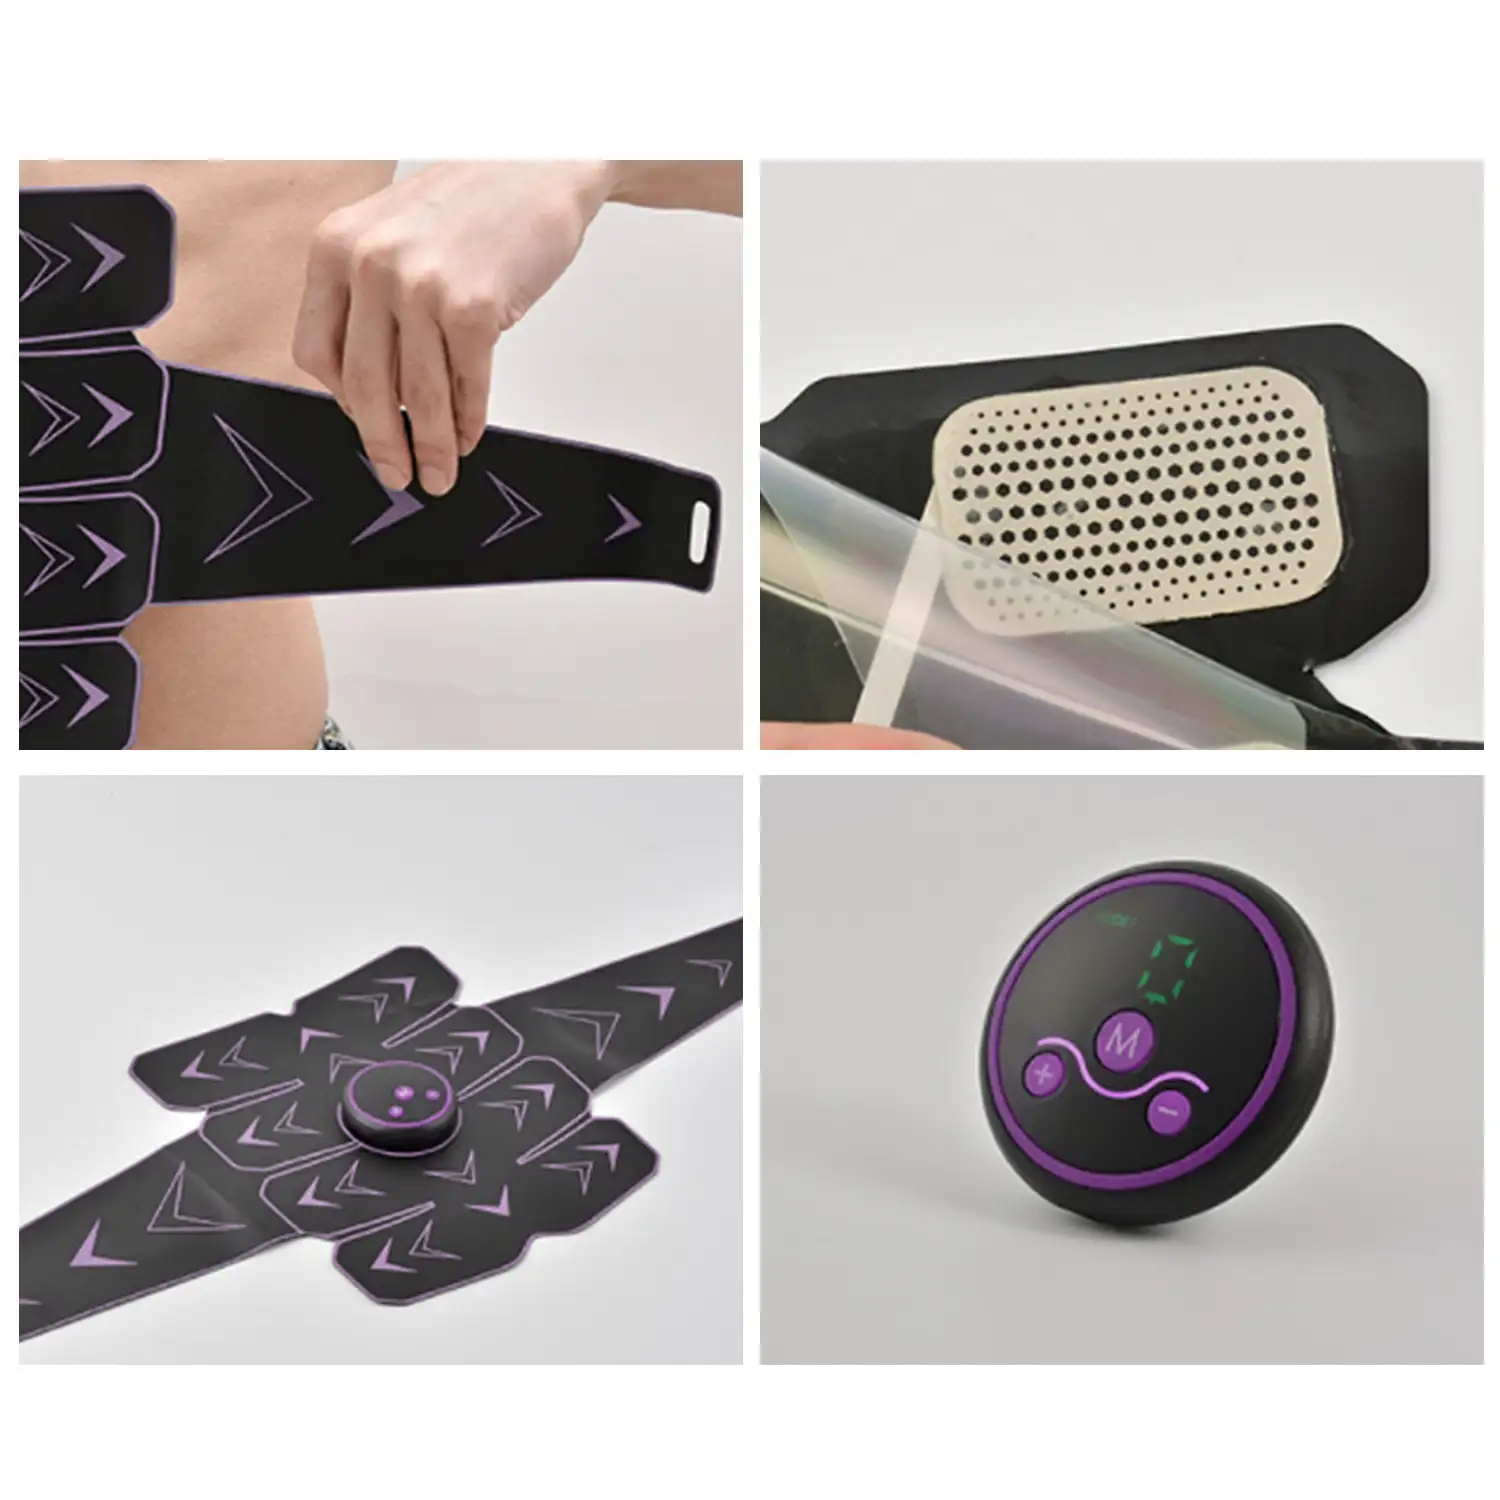 Cinturón de masaje EMS inteligente. Masajeador estimulador para abdominales, brazos/piernas.